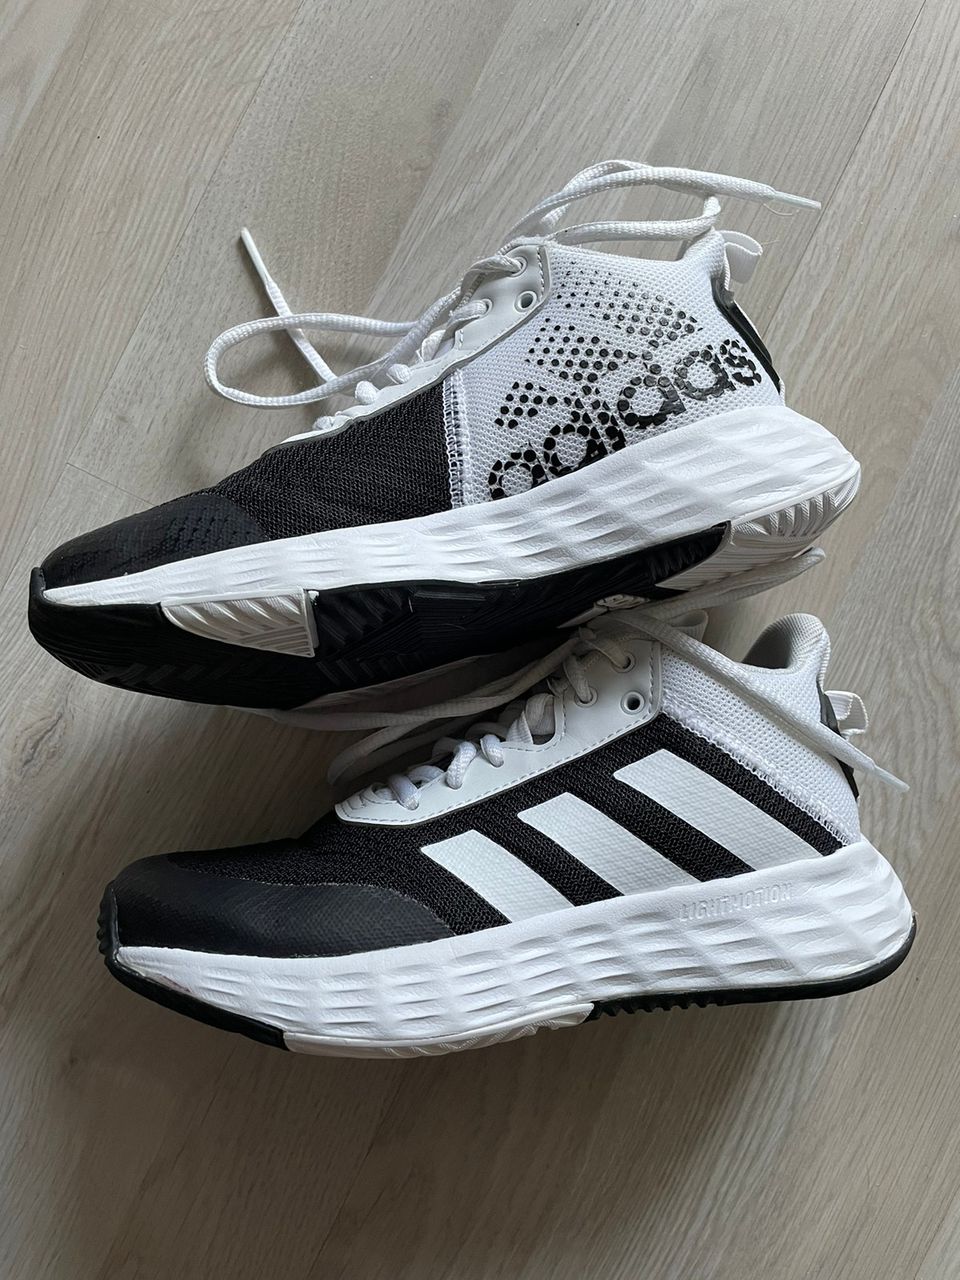 Adidas Ownthegame koripallo kengät